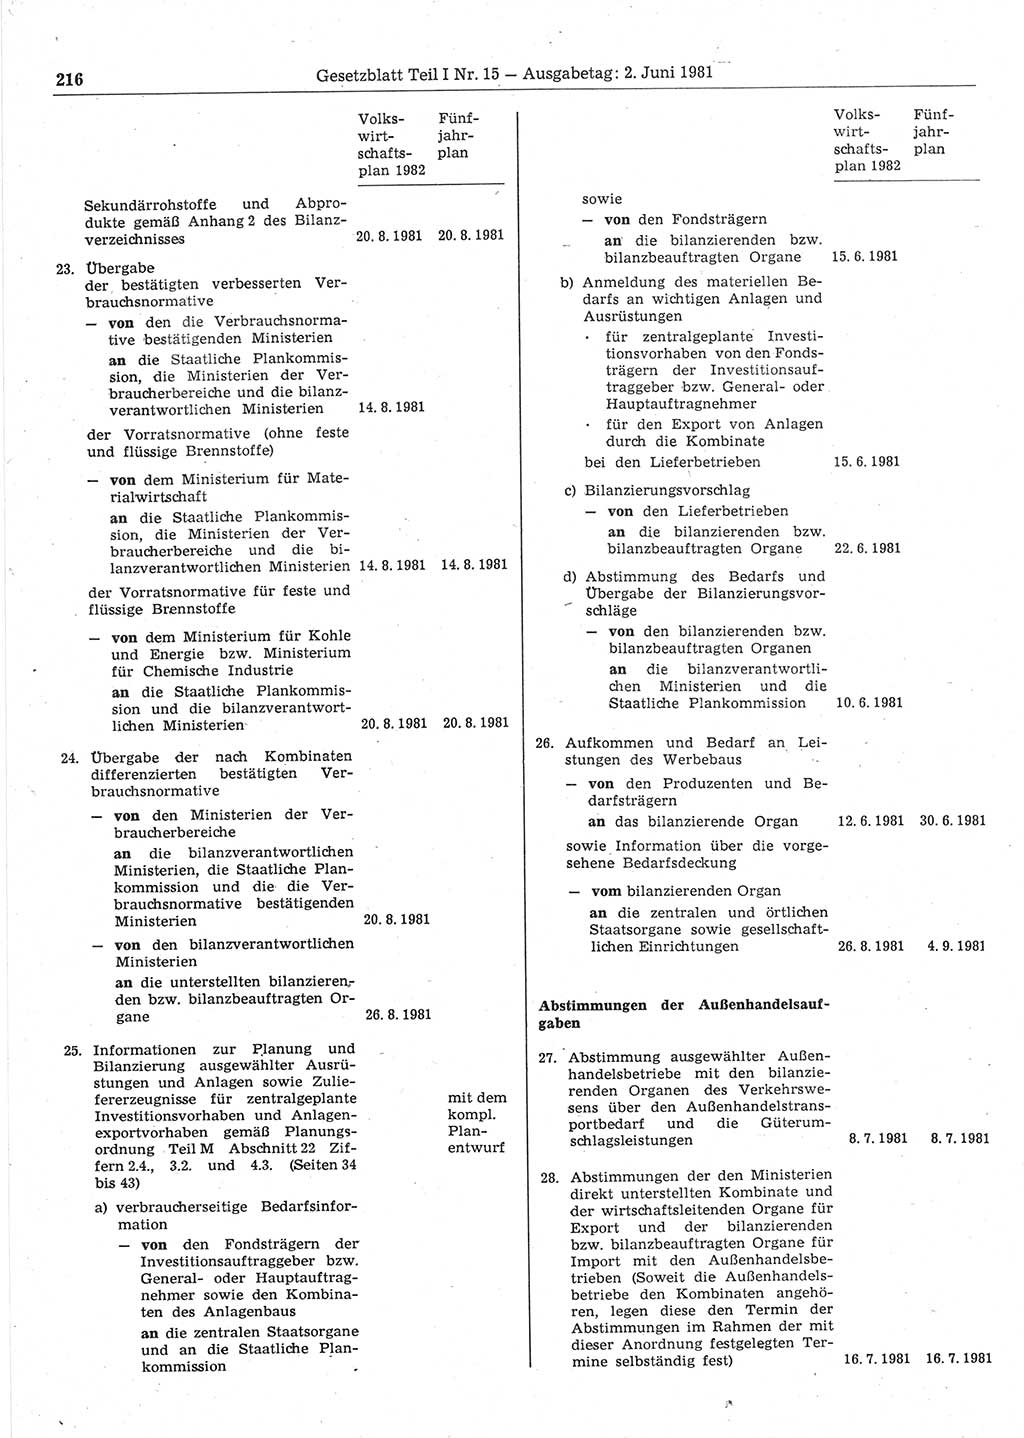 Gesetzblatt (GBl.) der Deutschen Demokratischen Republik (DDR) Teil Ⅰ 1981, Seite 216 (GBl. DDR Ⅰ 1981, S. 216)